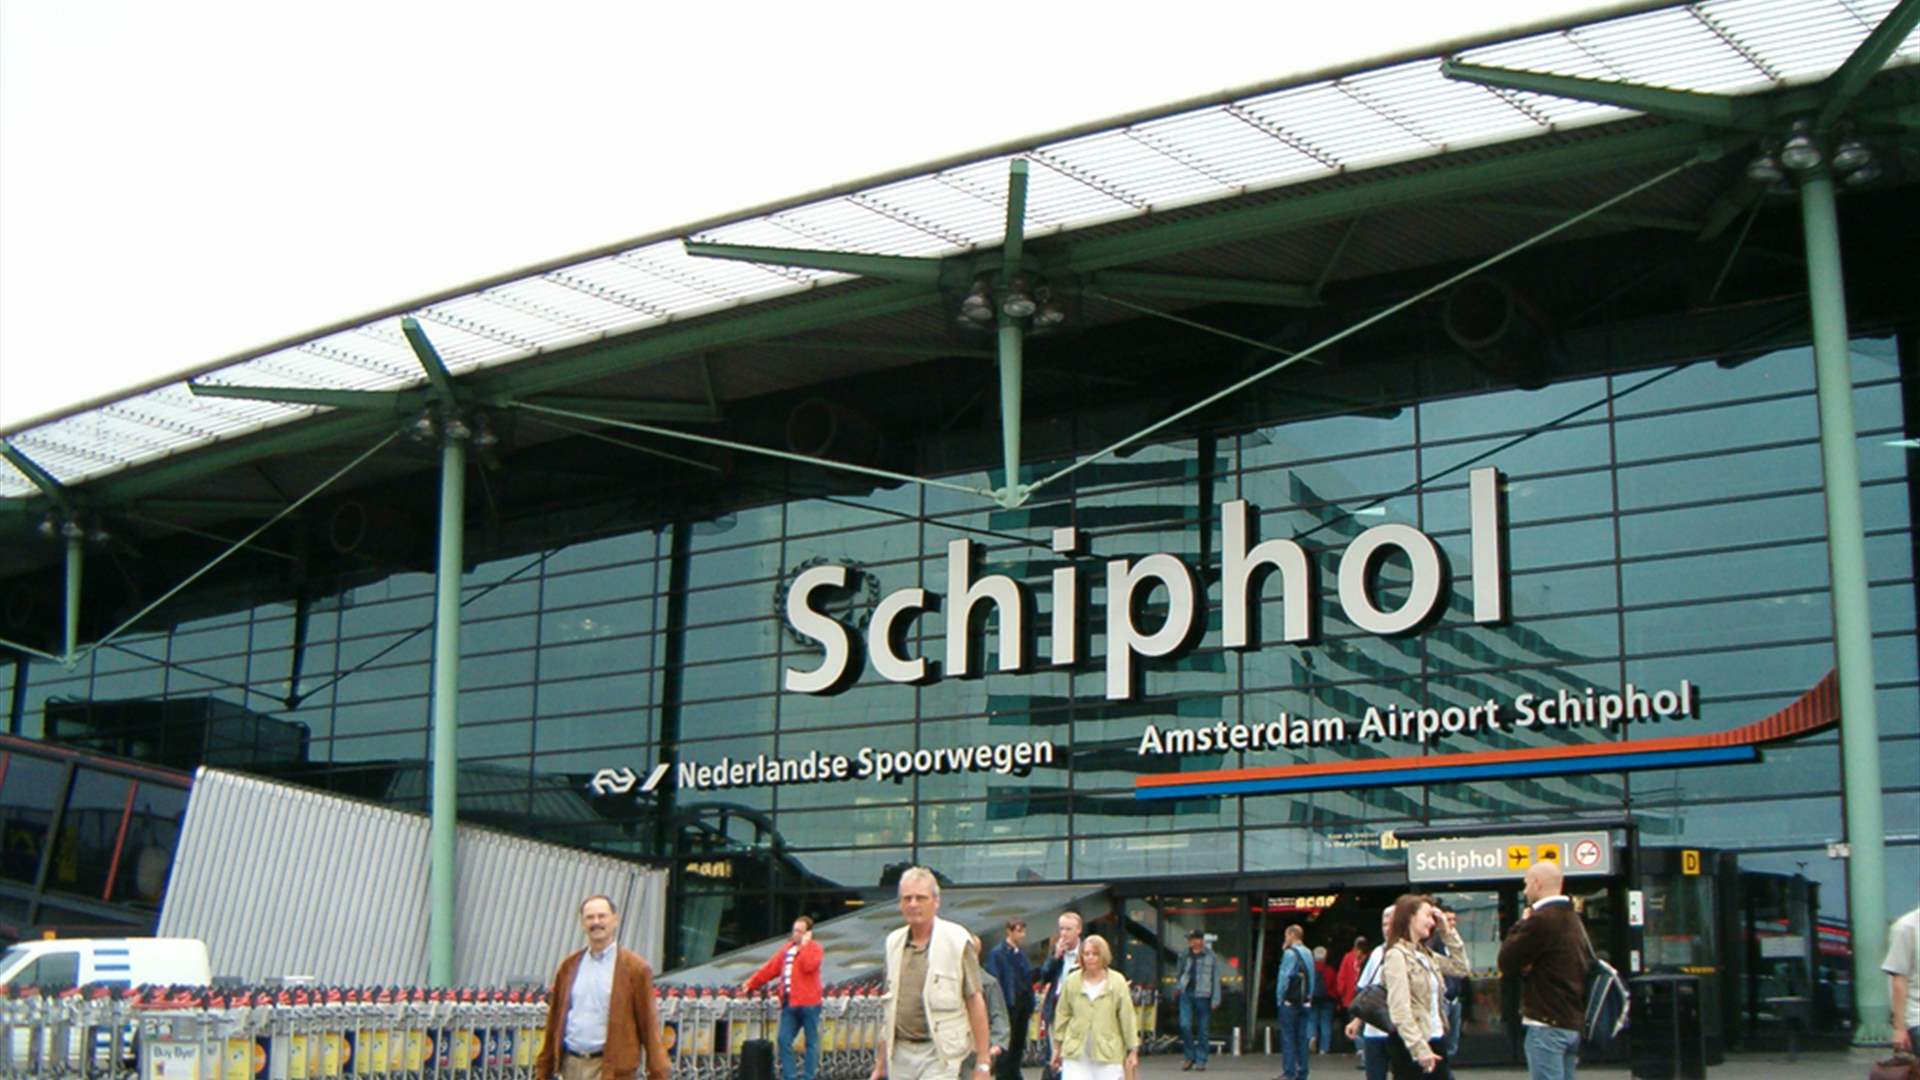 تعطل عالمي في الإنترنت يؤثر على عمليات مطار سخيبول في هولندا